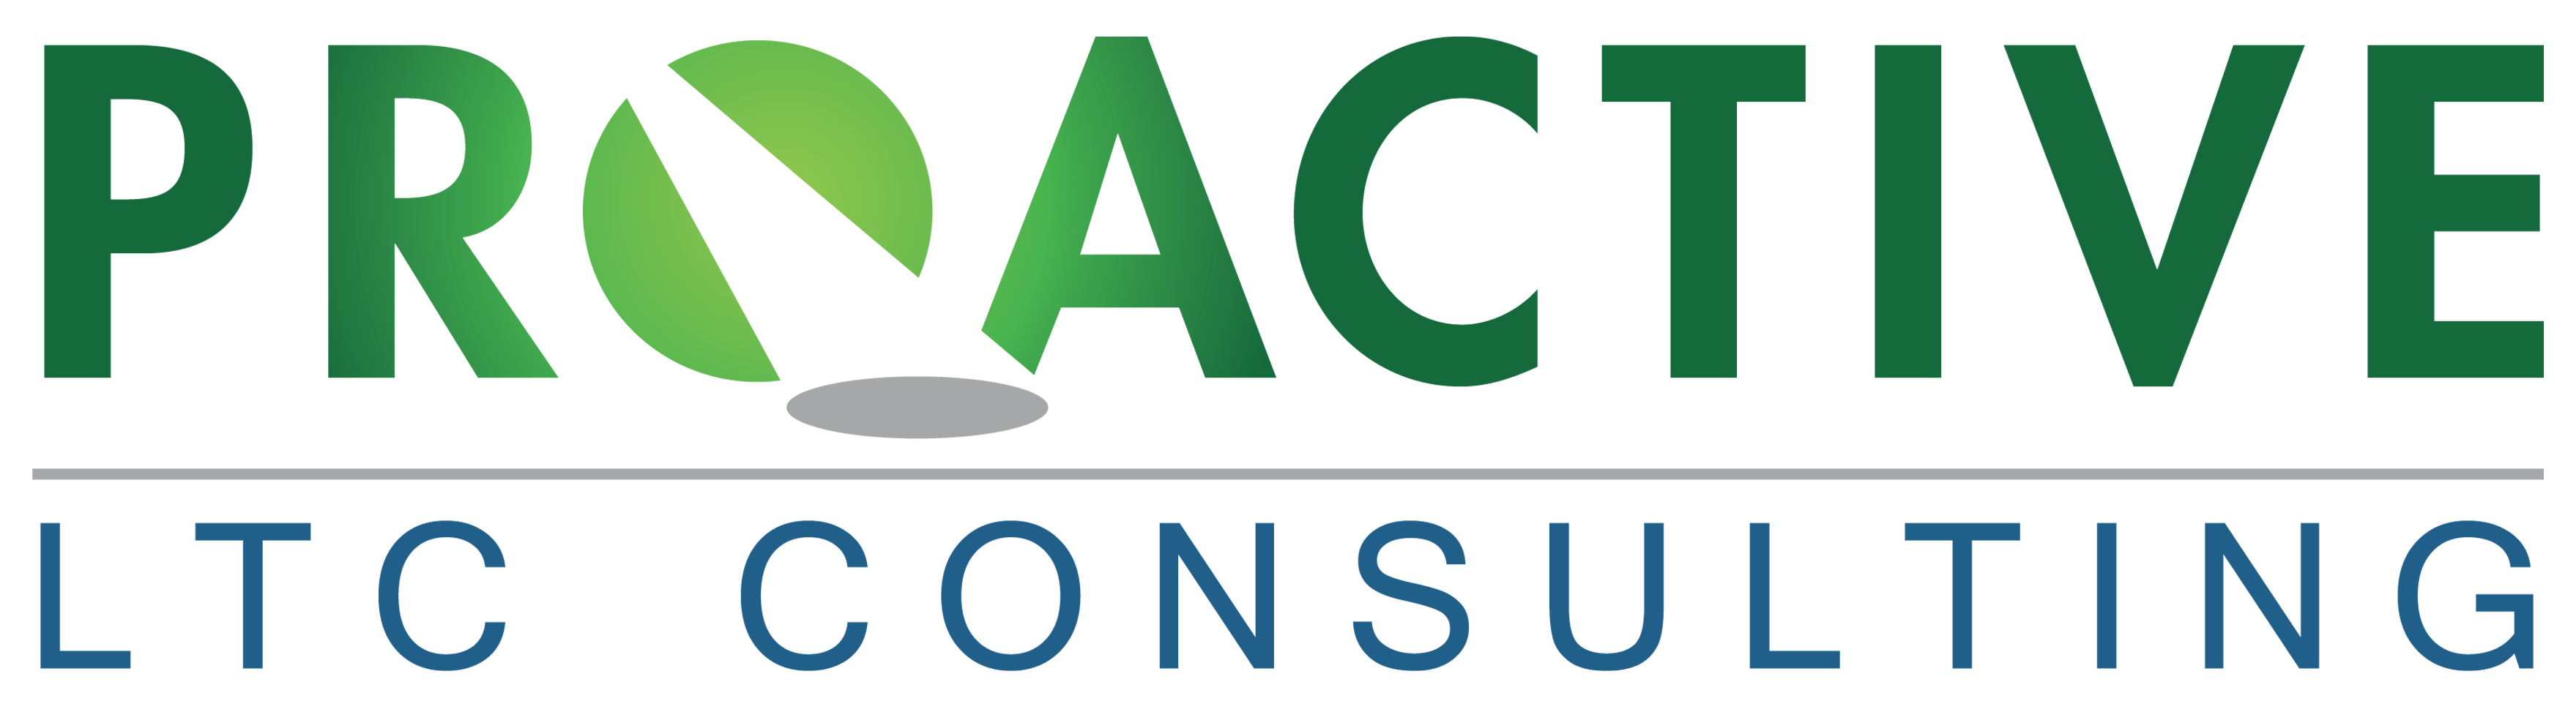 AAPACN Learner Dashboard: RAC CTA Certification Virtual Workshop 4/2